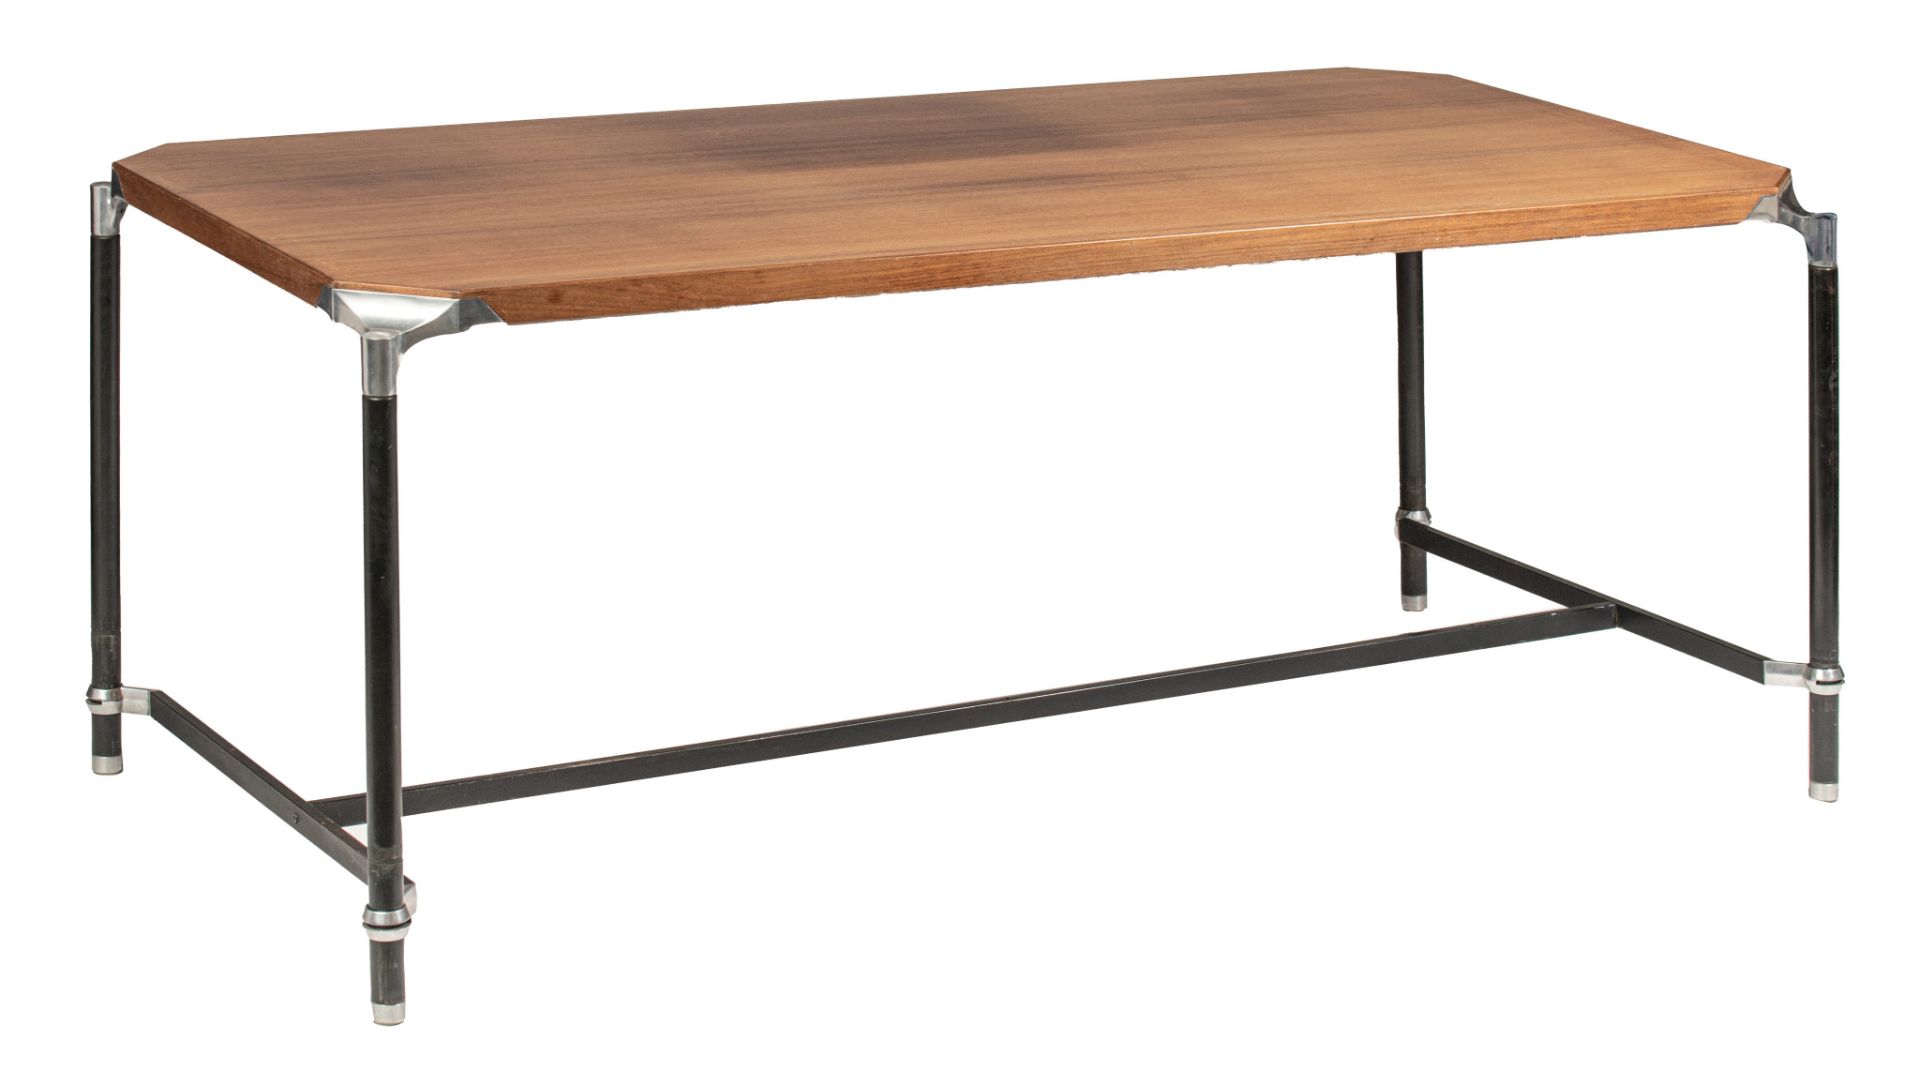 An Italian design model Urio desk table, Ico & Luisa Parisi for M.I.M. Roma, '60s, H 74 - W 180 - D